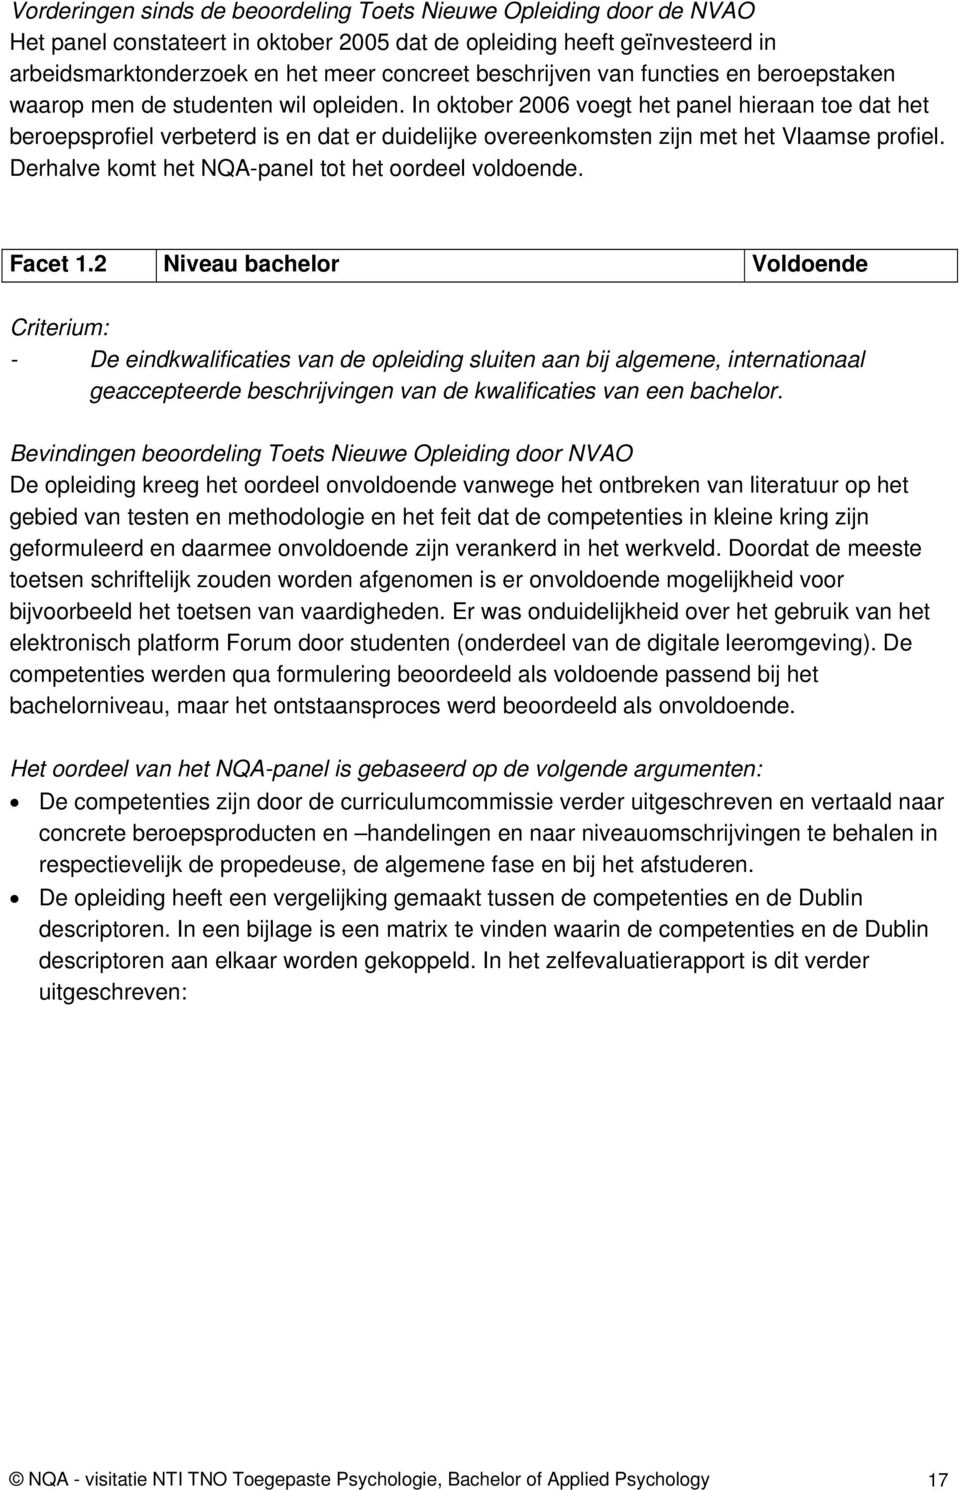 In oktober 2006 voegt het panel hieraan toe dat het beroepsprofiel verbeterd is en dat er duidelijke overeenkomsten zijn met het Vlaamse profiel. Derhalve komt het NQA-panel tot het oordeel voldoende.